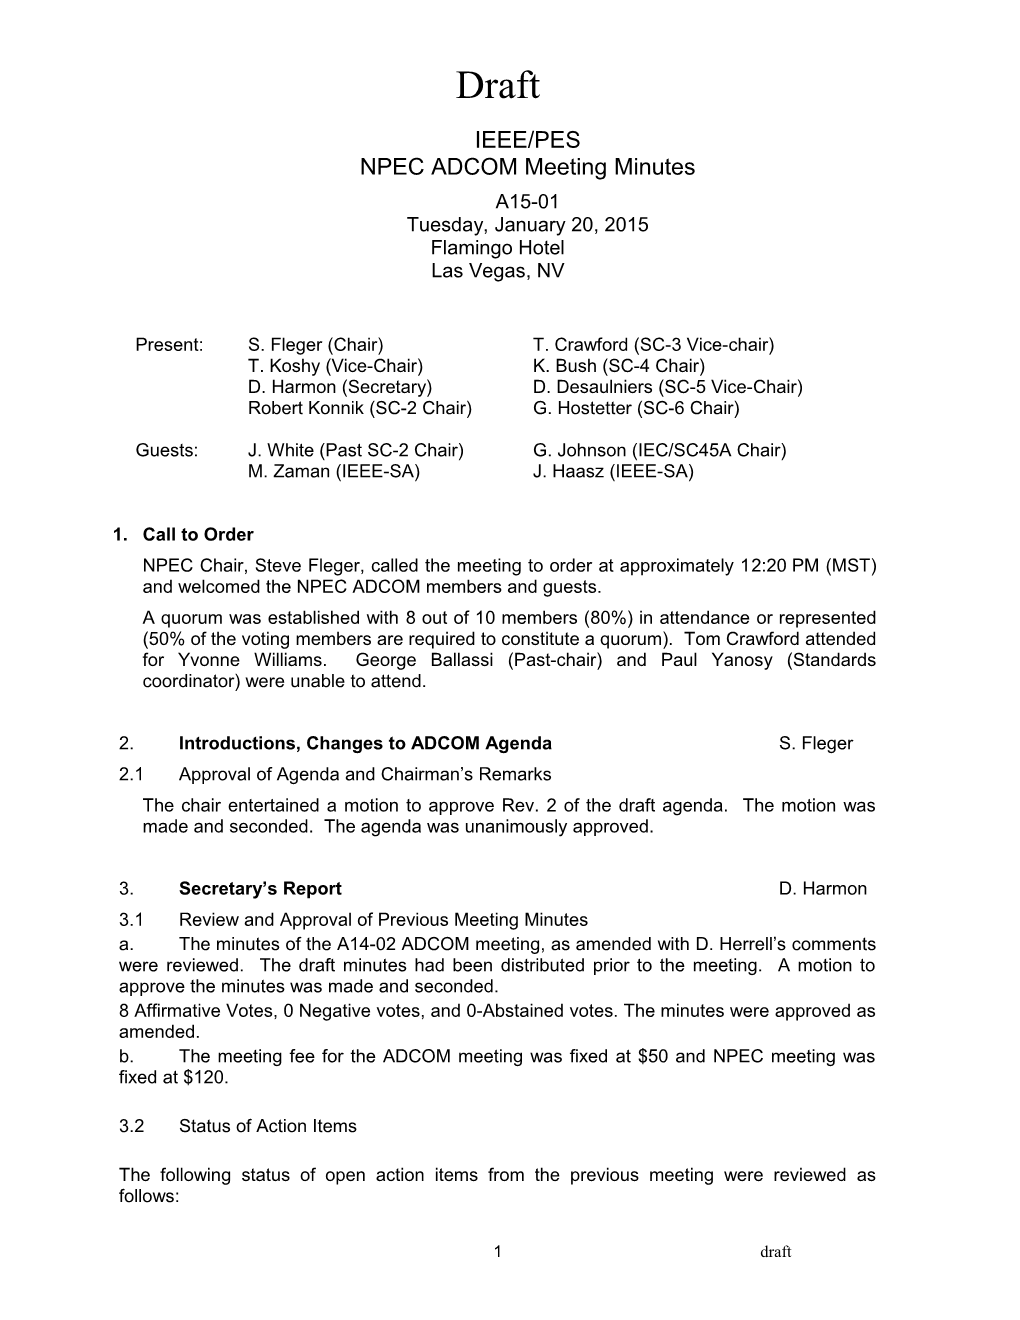 NPEC ADCOM Meeting Minutes